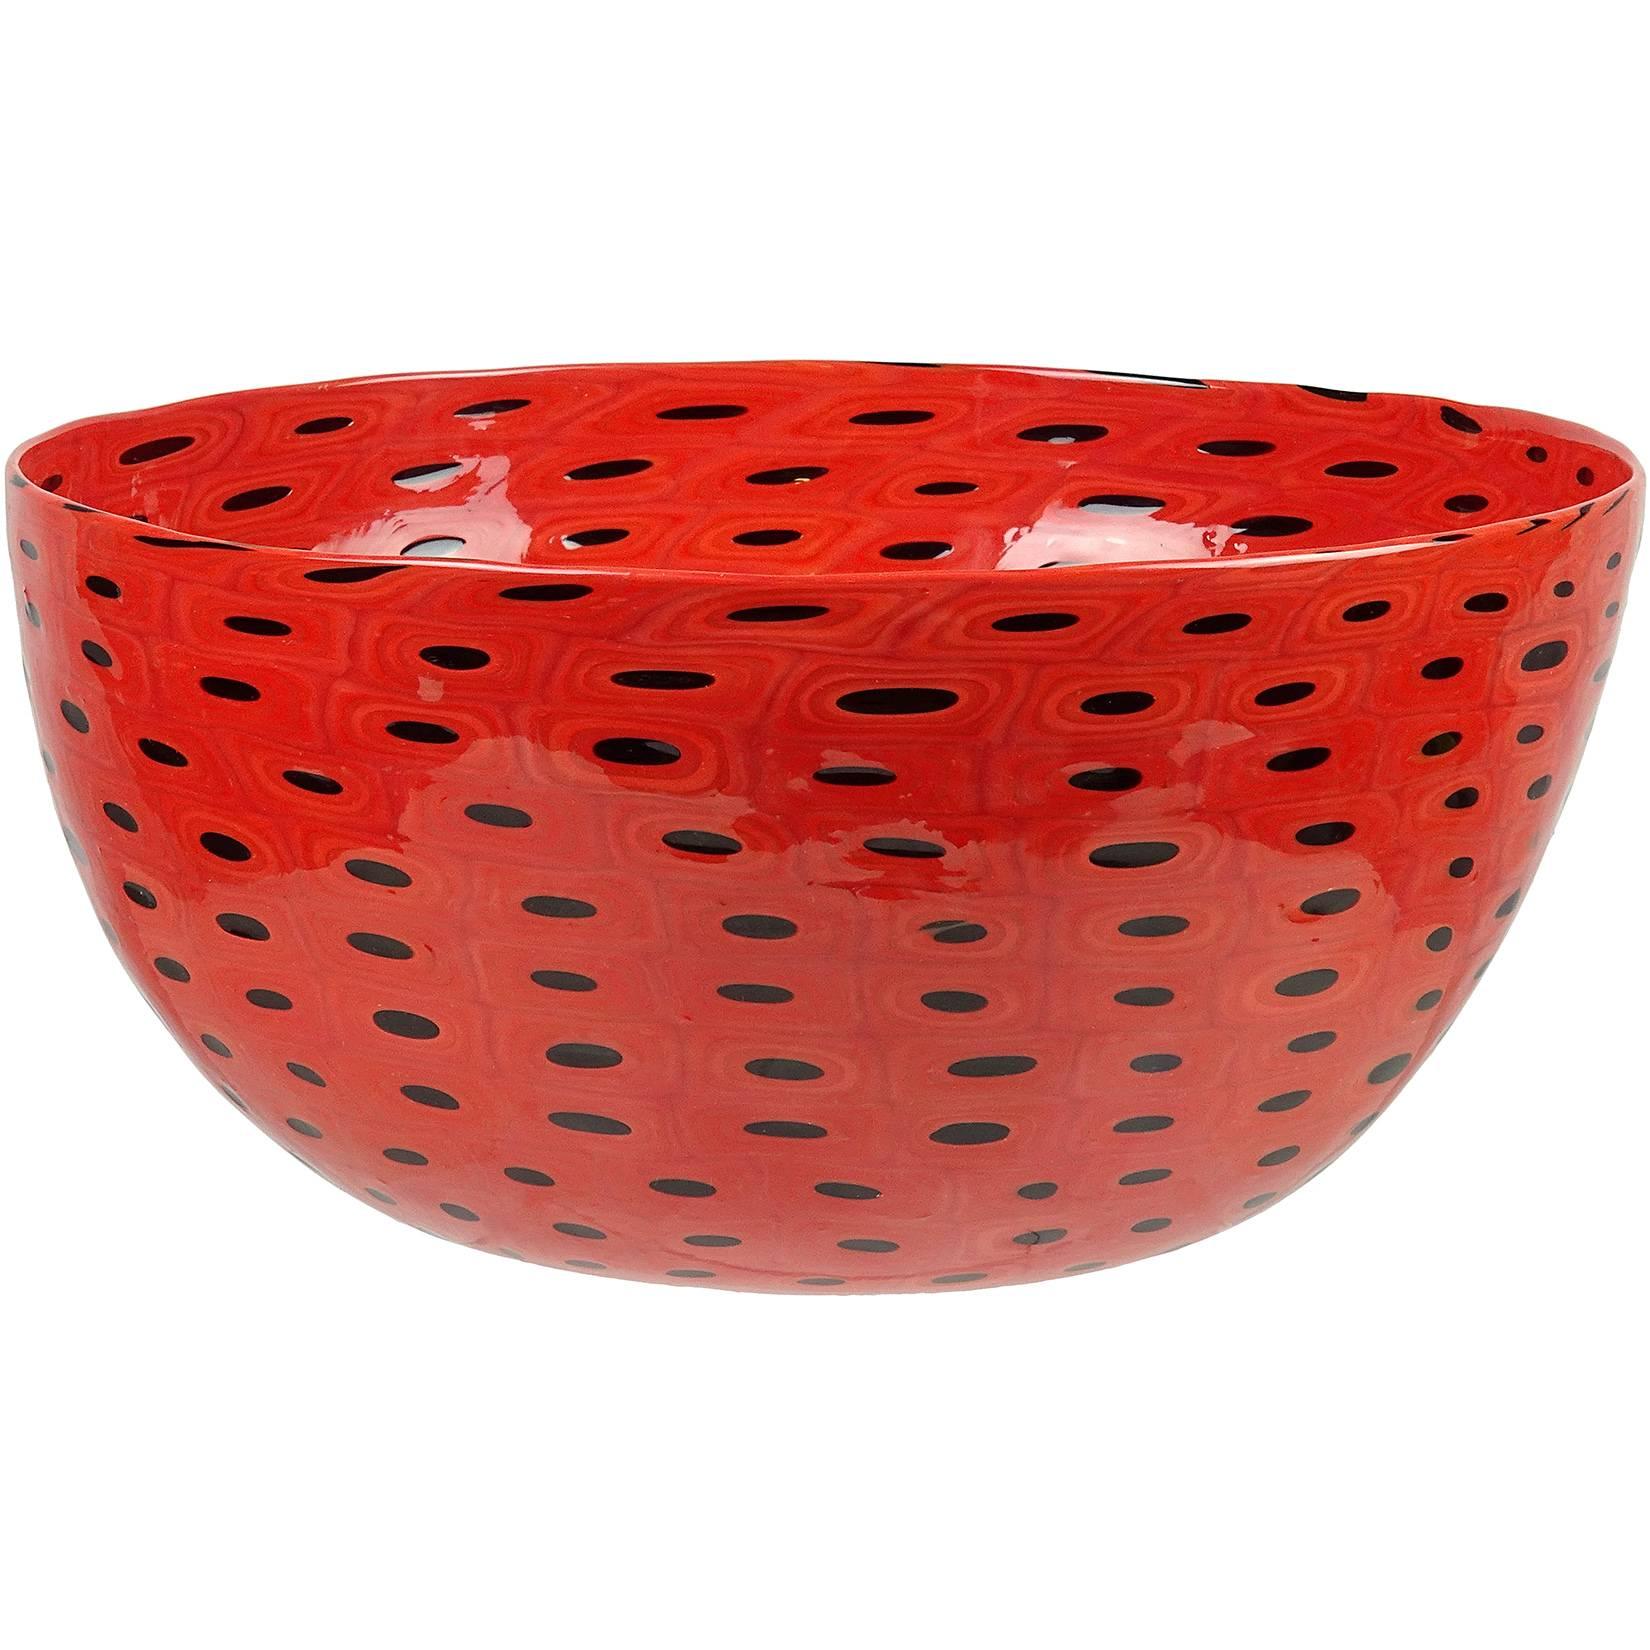 Vittorio Ferro Murano Red Black Bullseye Murrines Italian Art Glass Center Bowl